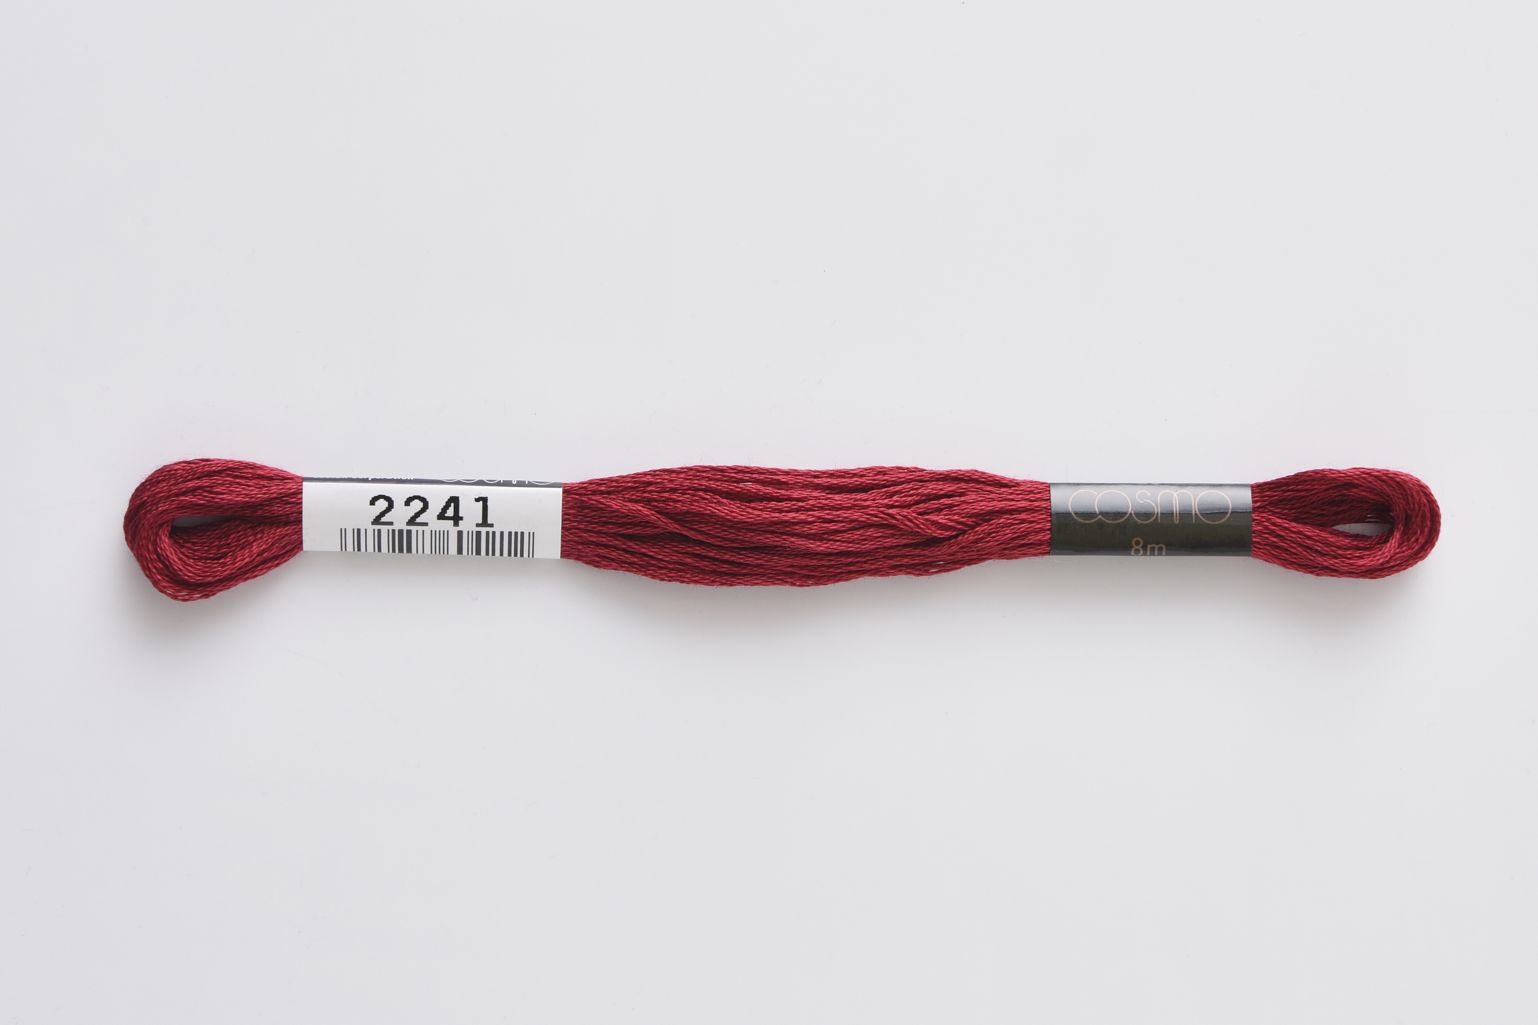 ■ COSMO #25 刺しゅう糸 ■ ◆25番刺しゅう糸　2241番◆　 LECIEN がコスモ刺しゅう糸の取り扱いを始めたのは1950年。 当初は195色展開でしたが、より多くの人を魅了する配色を求め、現在では500色の色数を手掛けるようになりました。原料・製法・品質にこだわり、シルクのように輝く光沢に、ソフトな風合い、そして美しい発色を持つコスモ刺しゅう糸は日本国内にとどまらず、欧米をはじめオーストラリア、台湾など世界中の方に愛され、使用されています。 色あせ色落ちしにくい上品な光沢、匠の技術による美しい発色、プロも愛用する繊細なカラーバリエーションが魅力の手刺しゅう用糸（6本あま撚り）。 高級超長綿を使用しています。 ◆ネコポスは合計20本までご利用可能です。 　上記を超える場合は宅配便での配送になります。 　ネコポス、宅急便の詳細については以下を必ずご確認ください。 ◆在庫の都合上、メーカー発注が必要な場合があります。 ◆画像やモニターによって実際の色合いと異なる場合があります。 ◆ご購入数により配送料金が割増になる場合があります。その場合別途メールでご確認させていただきます。 ■ COSMO #25 刺しゅう糸 ■ ◆素材　　：綿100％　 ◆カラー　：2241 ◆メーカー：ルシアン/lecien ◆こちらの商品ページは1本単位での販売です。 手芸の丸十はお客様の手作りのお時間を少しでも楽しいものにしていただけるよう、お手伝いさせていただきます。手芸用品 服飾用品 生地 毛糸 雑貨 ソーイング レシピ 編み図 パターン 刺しゅう 手作りキット レジン アクセサリー ぬいぐるみ 編みぐるみ 手づくり プレゼント ベビー用品 入園入学 オーガニック素材